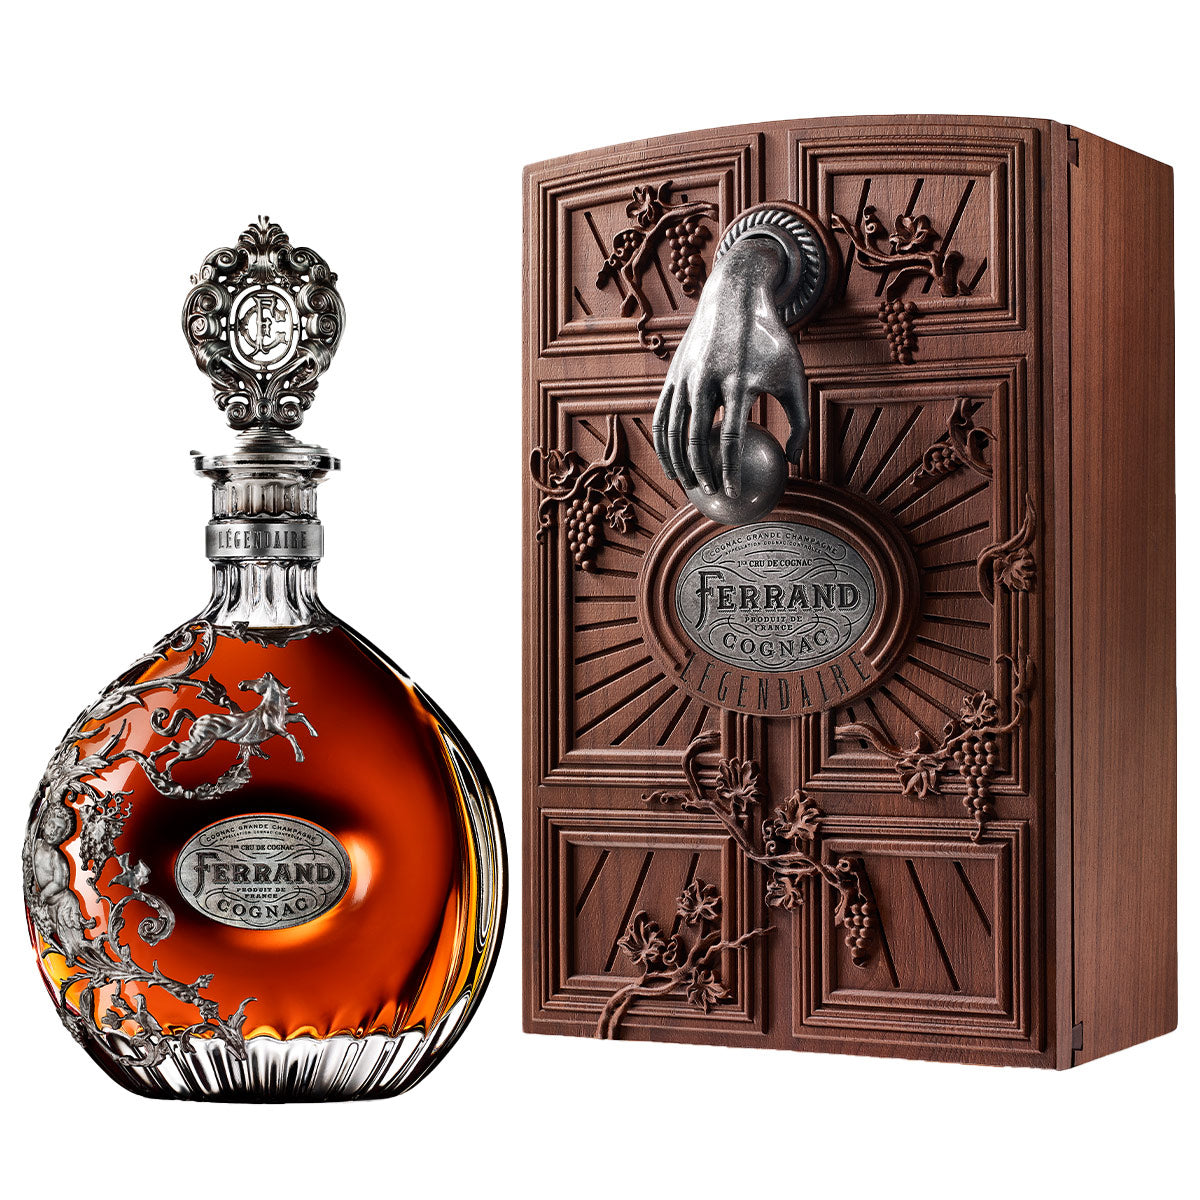 Pierre Ferrand cognac légendaire